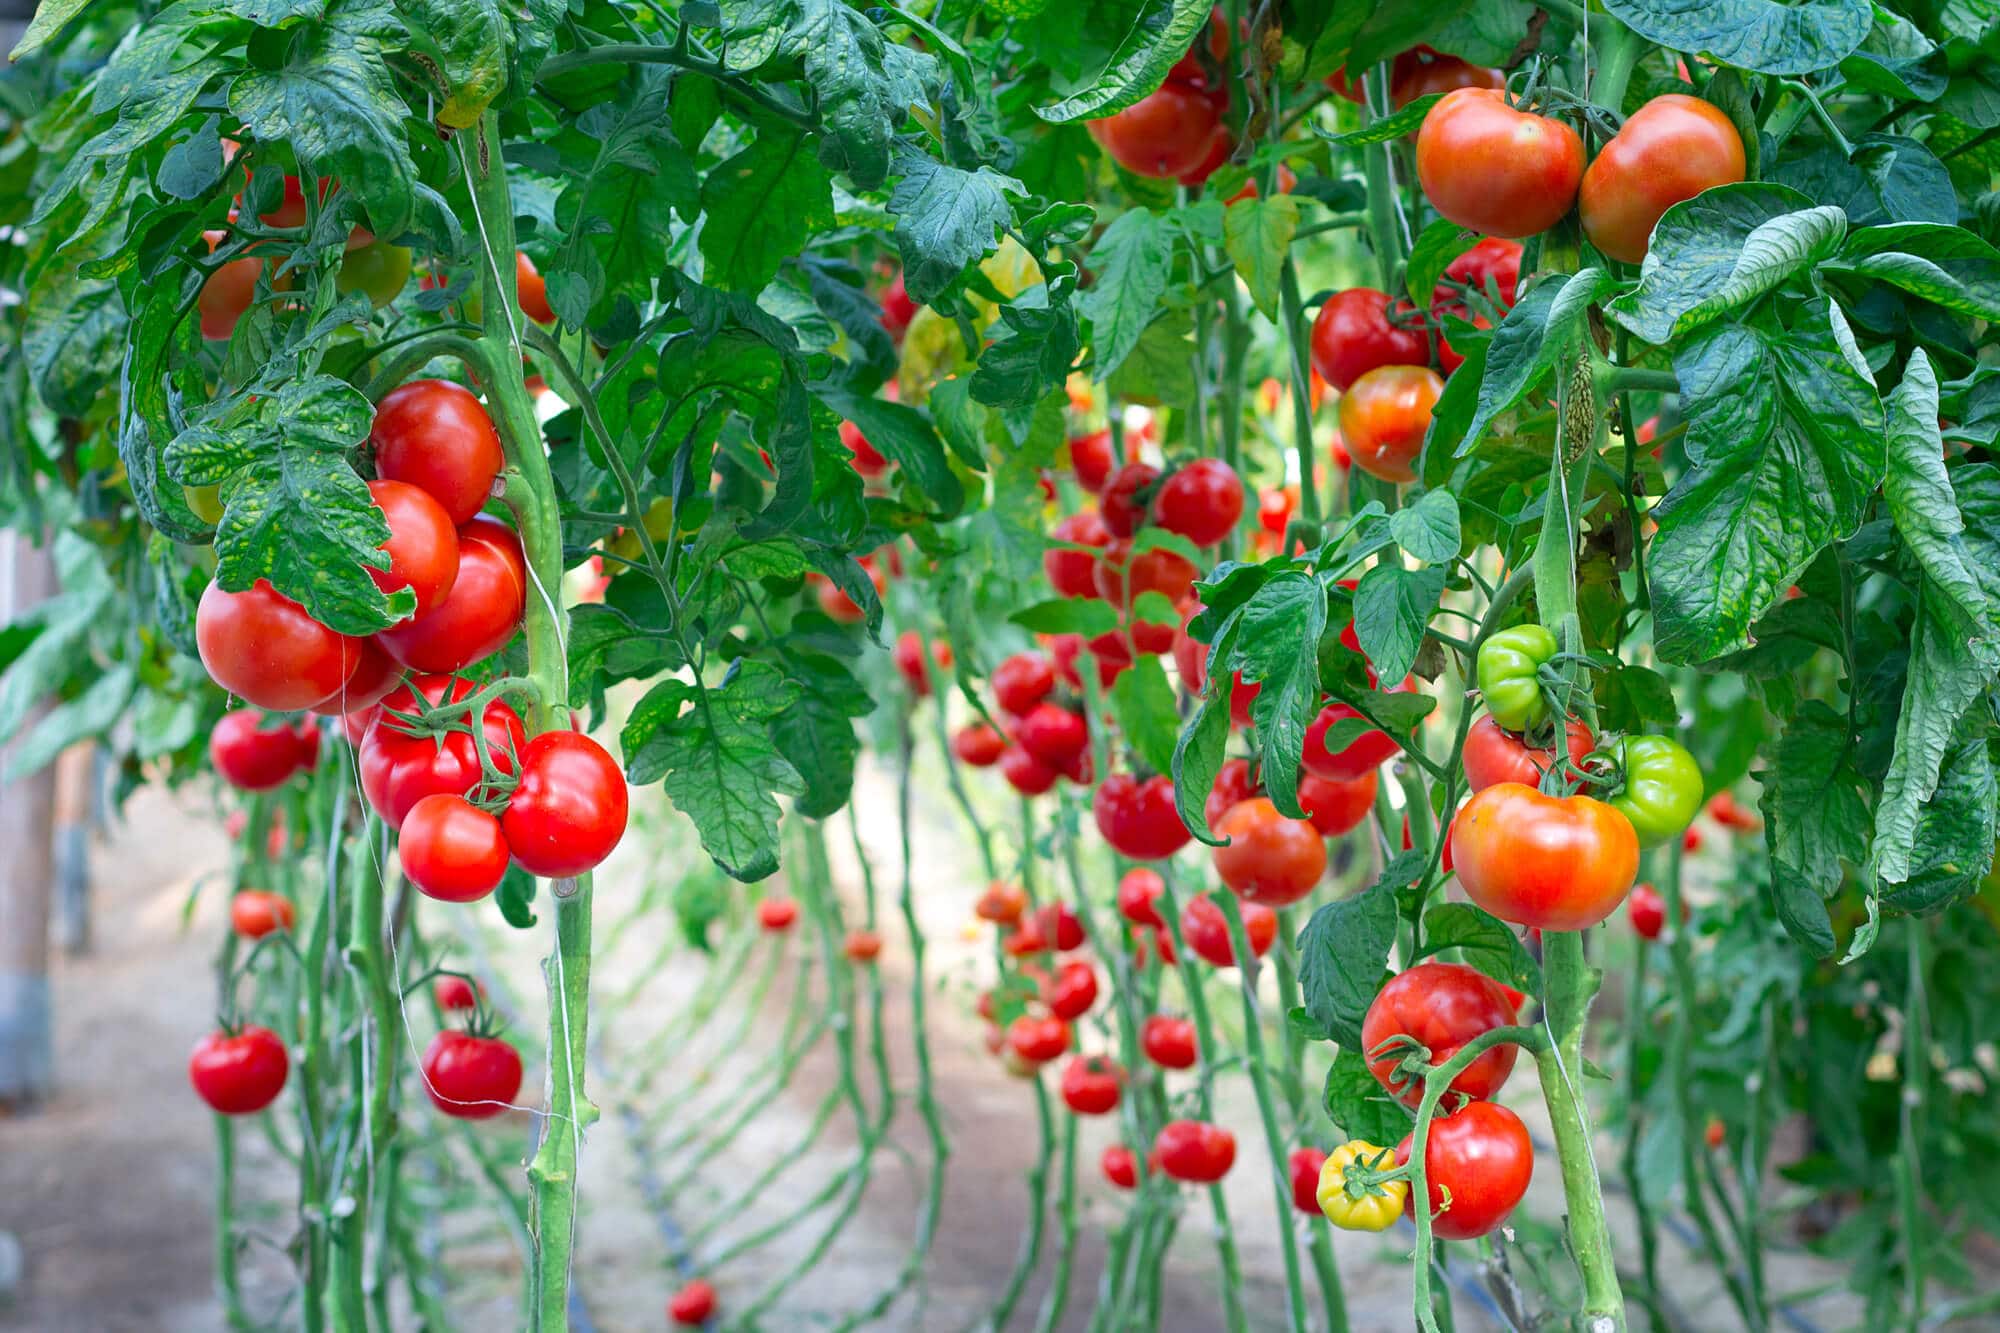 עגבניות. עכשיו יהיה אפשר לגדל באיזורים יבשים יותר.  <a href="https://depositphotos.com. ">המחשה: depositphotos.com</a>